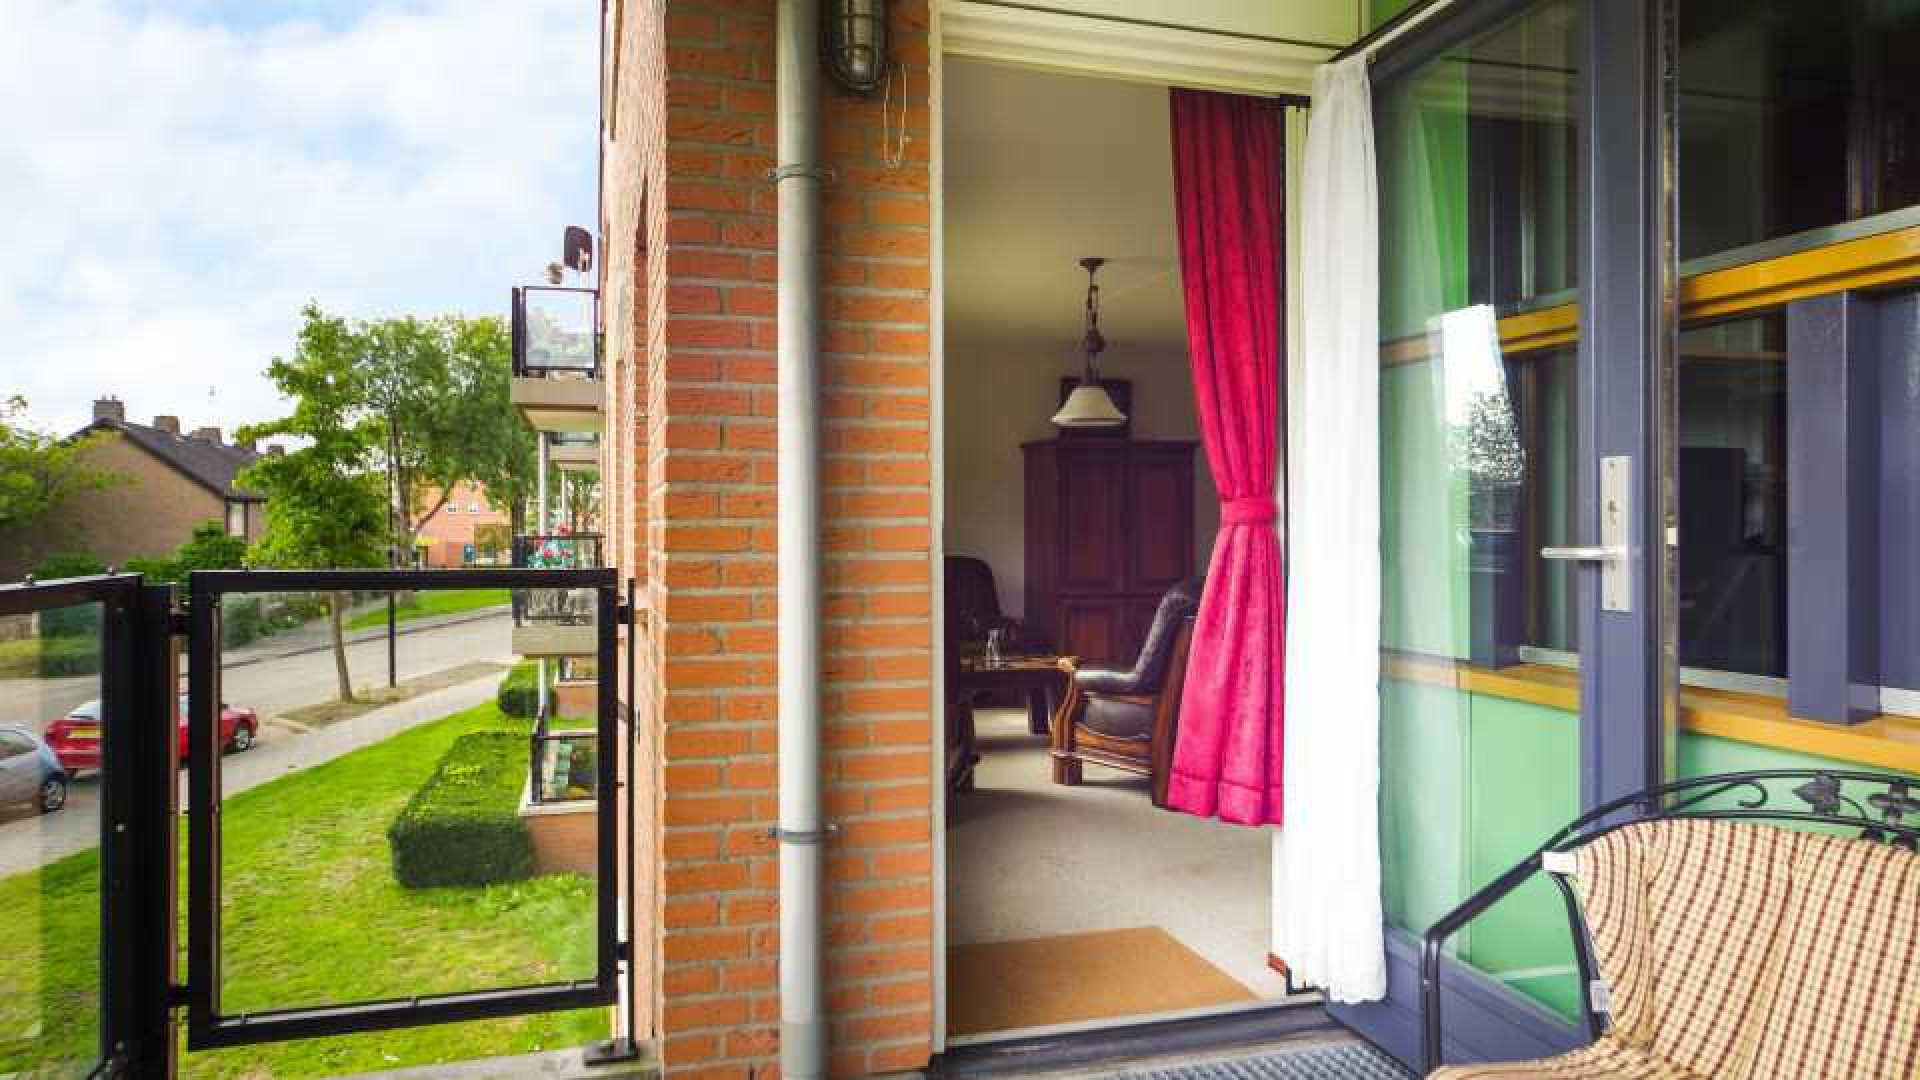 Louis van Gaal koopt luxe vijftig plus appartement!